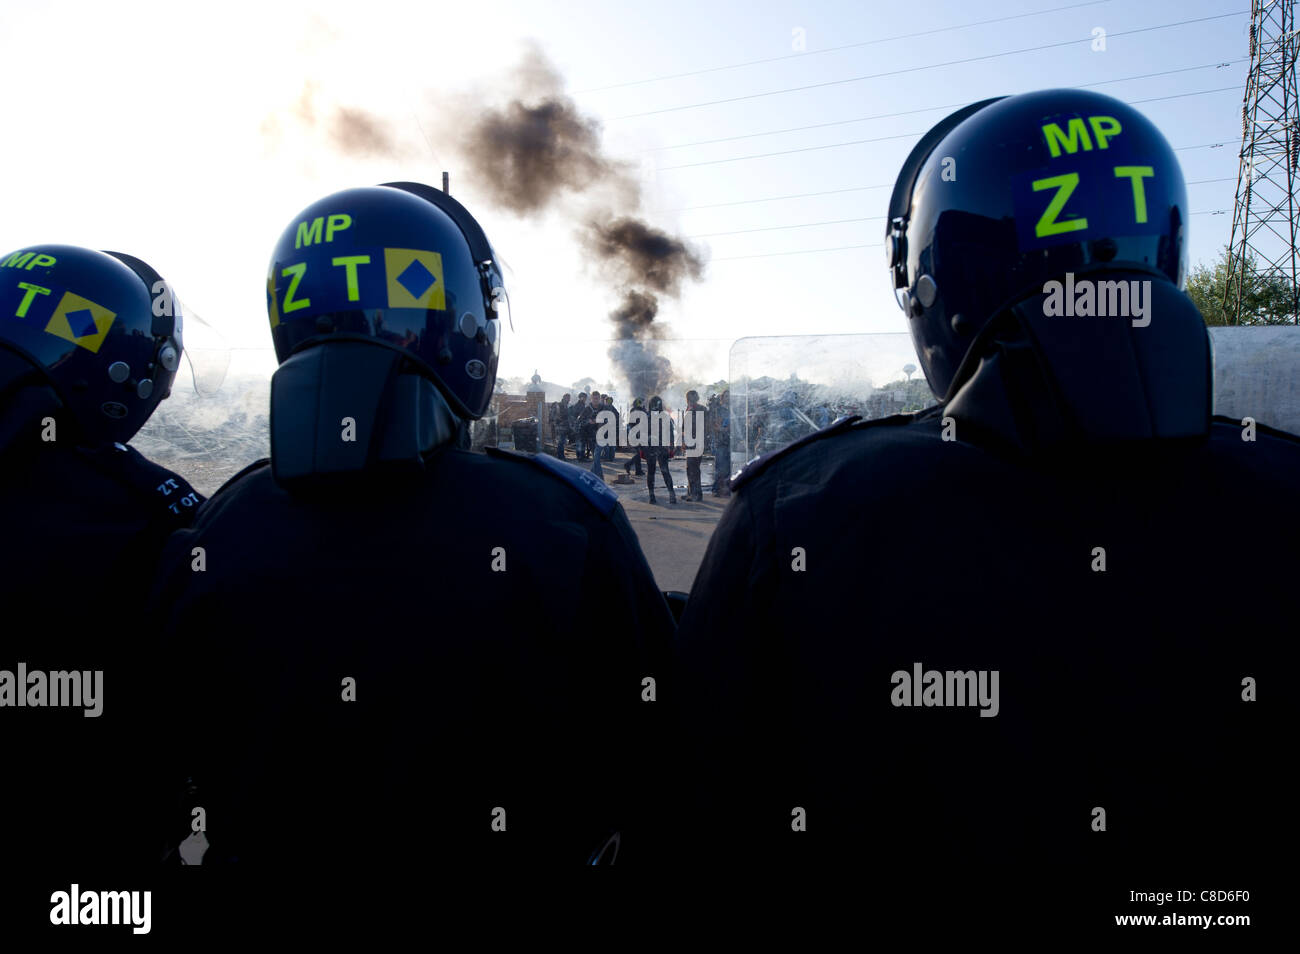 Dale Farm Räumung. Drei randalieren Polizisten auf Schnur, als Demonstranten Brände auf den Reisenden Website als Rauch steigt. Stockfoto